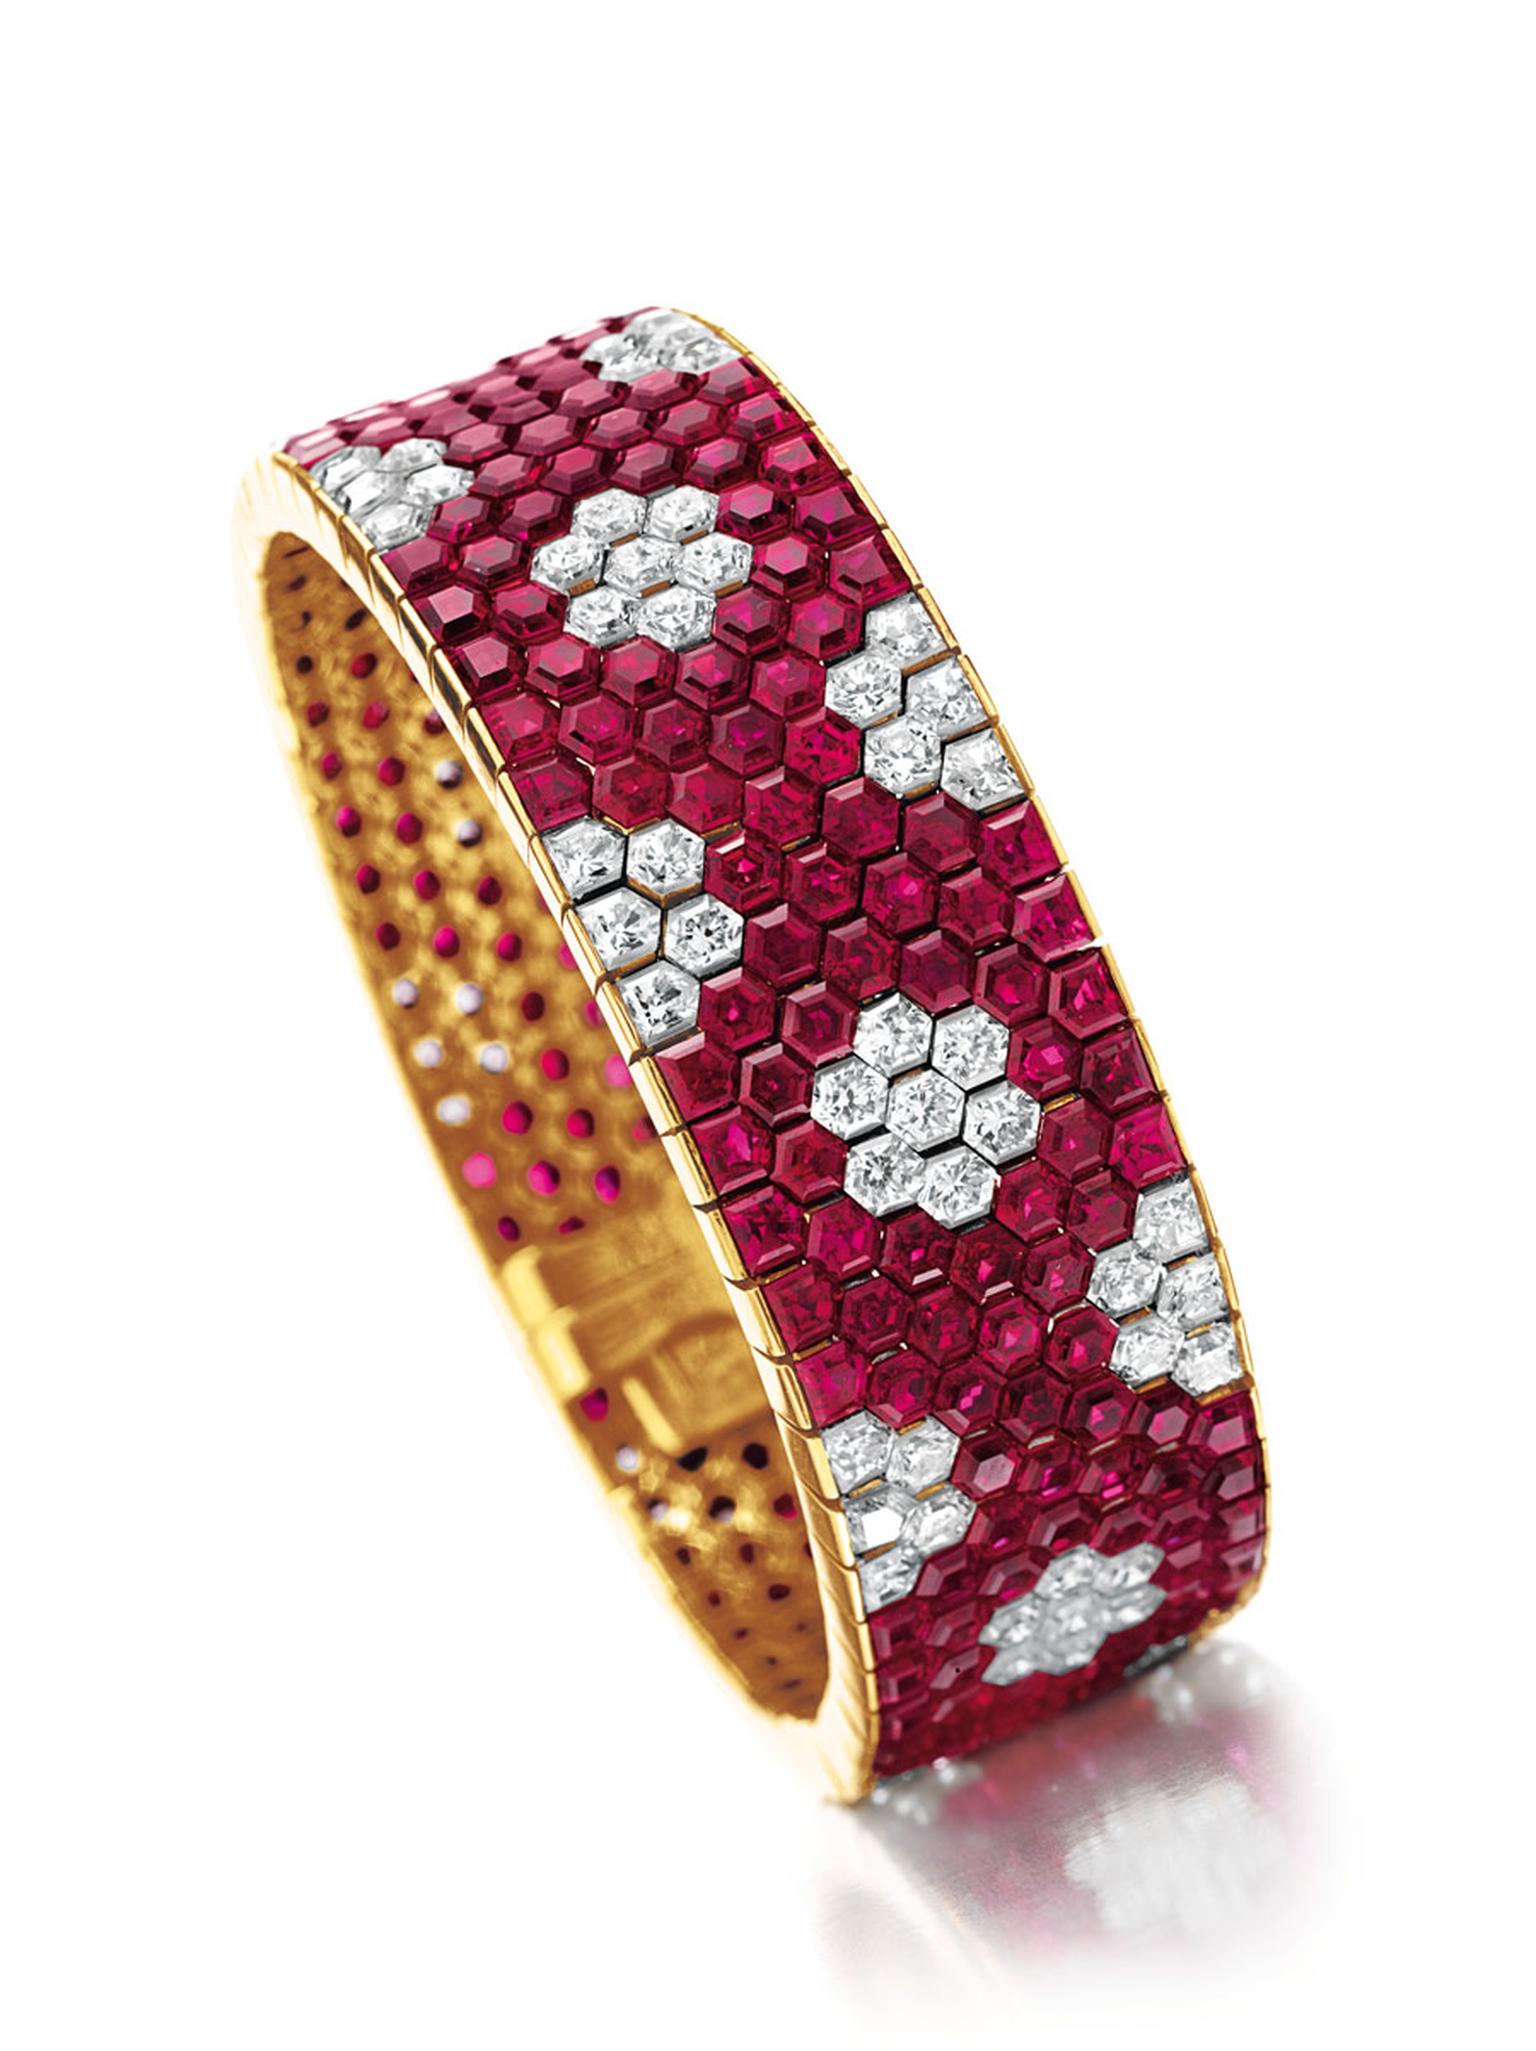 Christies-ruby-and-diamond-bracelet-by-Van-Cleef.jpg